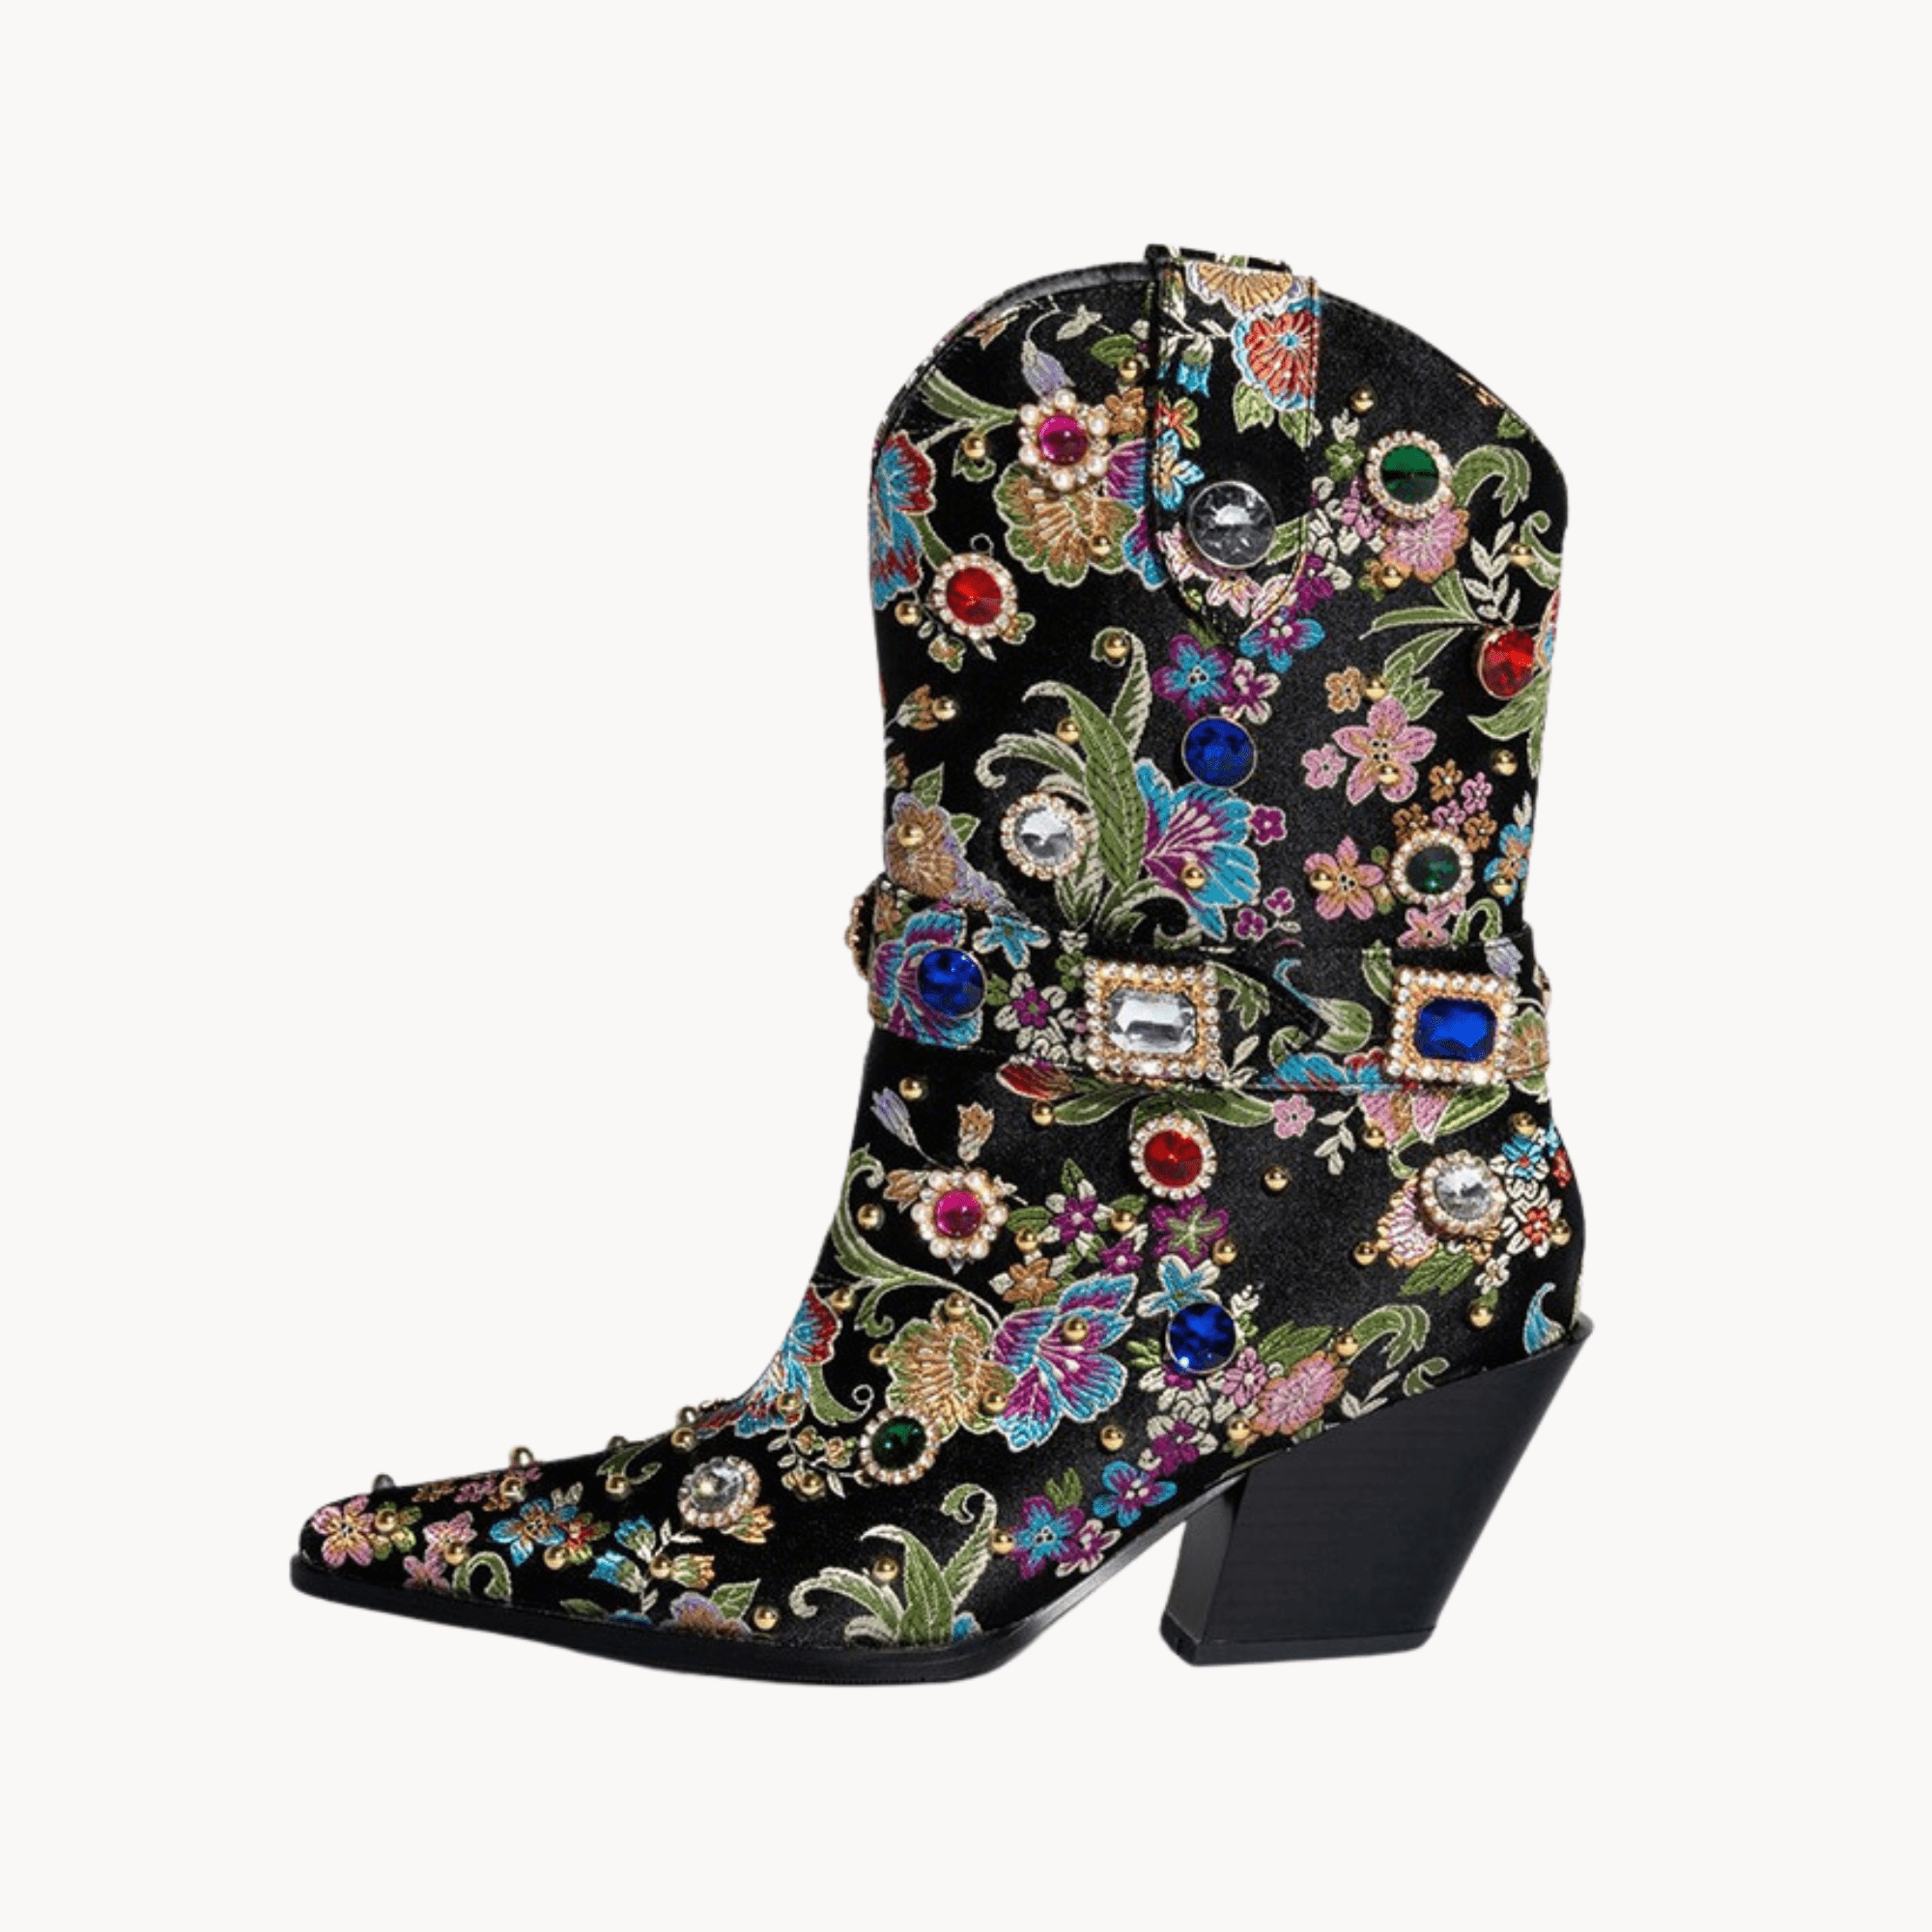 Gemstones Embellished Floral Ankle Boots - Kelly Obi New York